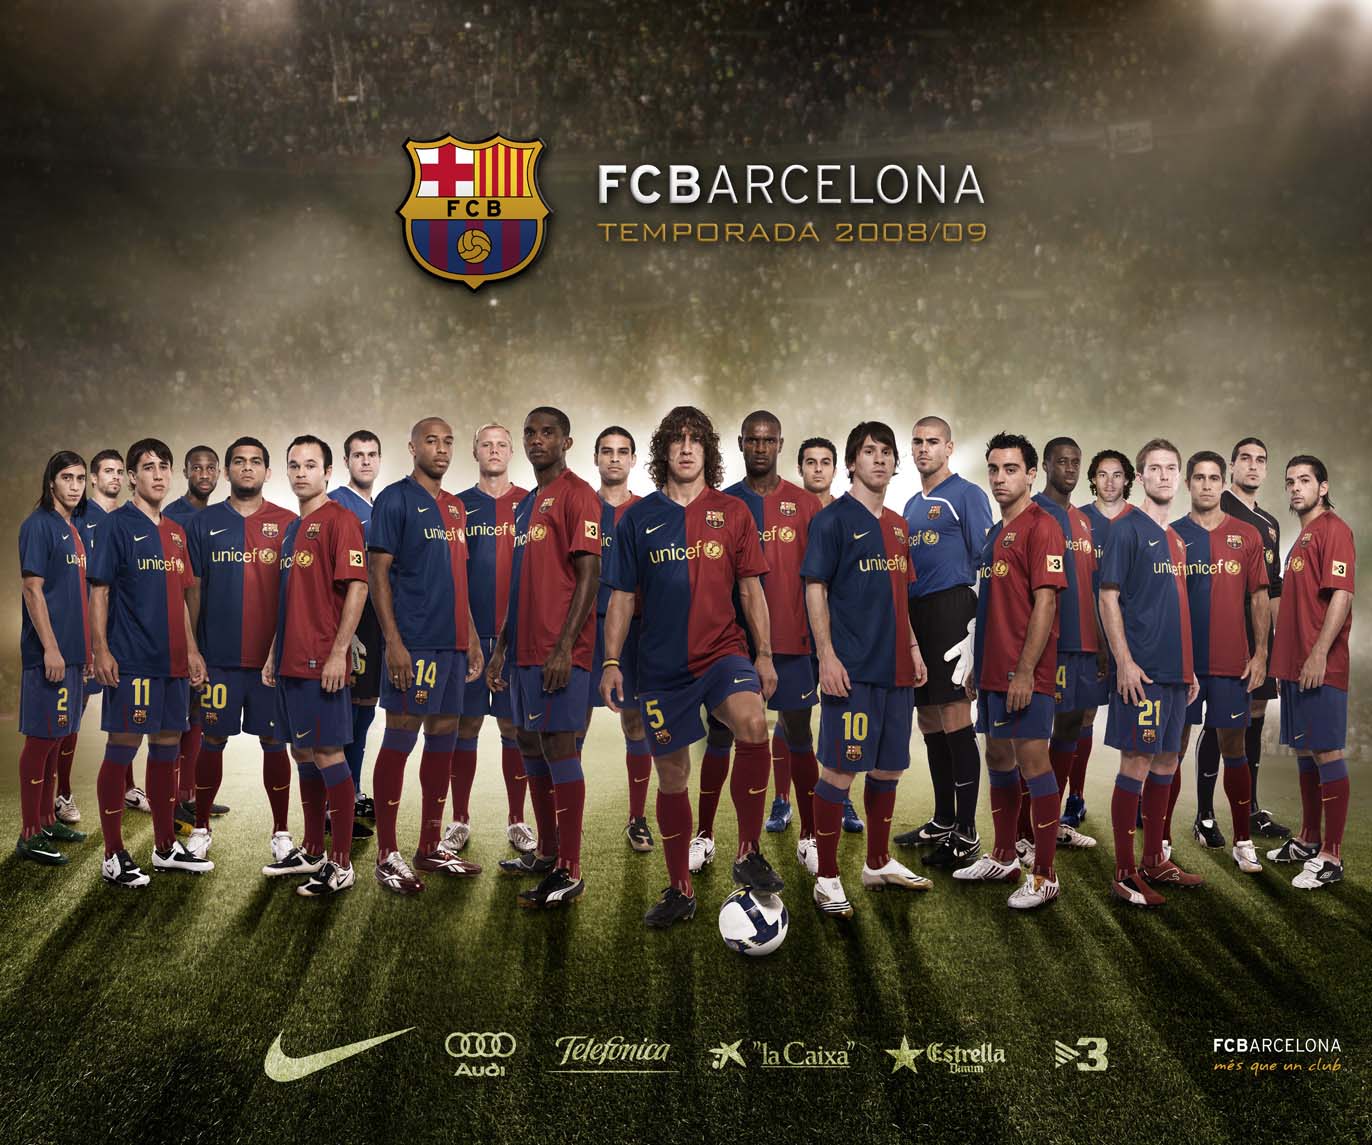 wallpaper of football: Wallpaper of FC Barcelona still on the top